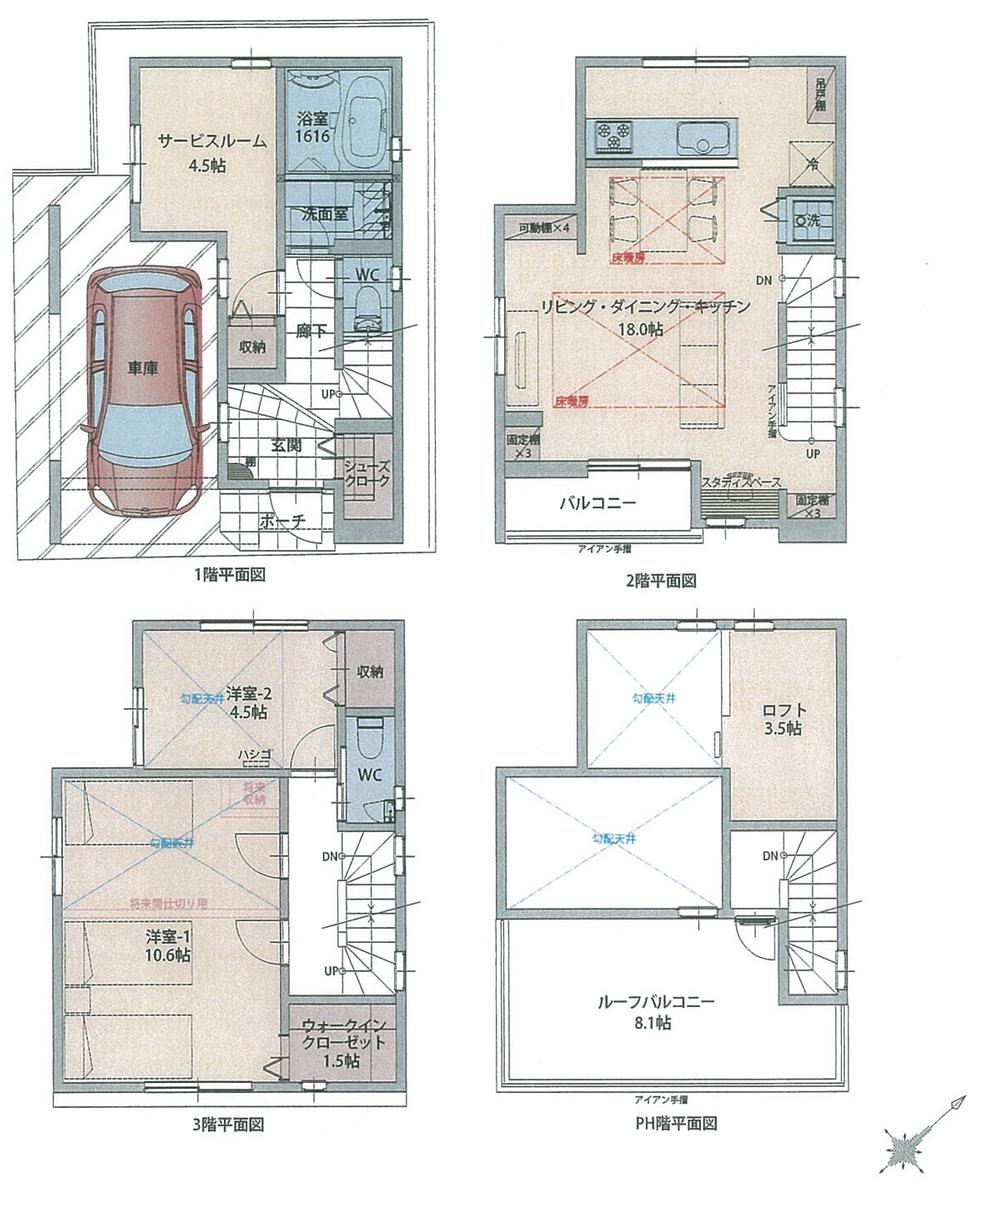 Floor plan. 58,800,000 yen, 2LDK + S (storeroom), Land area 52.6 sq m , Building area 96.4 sq m